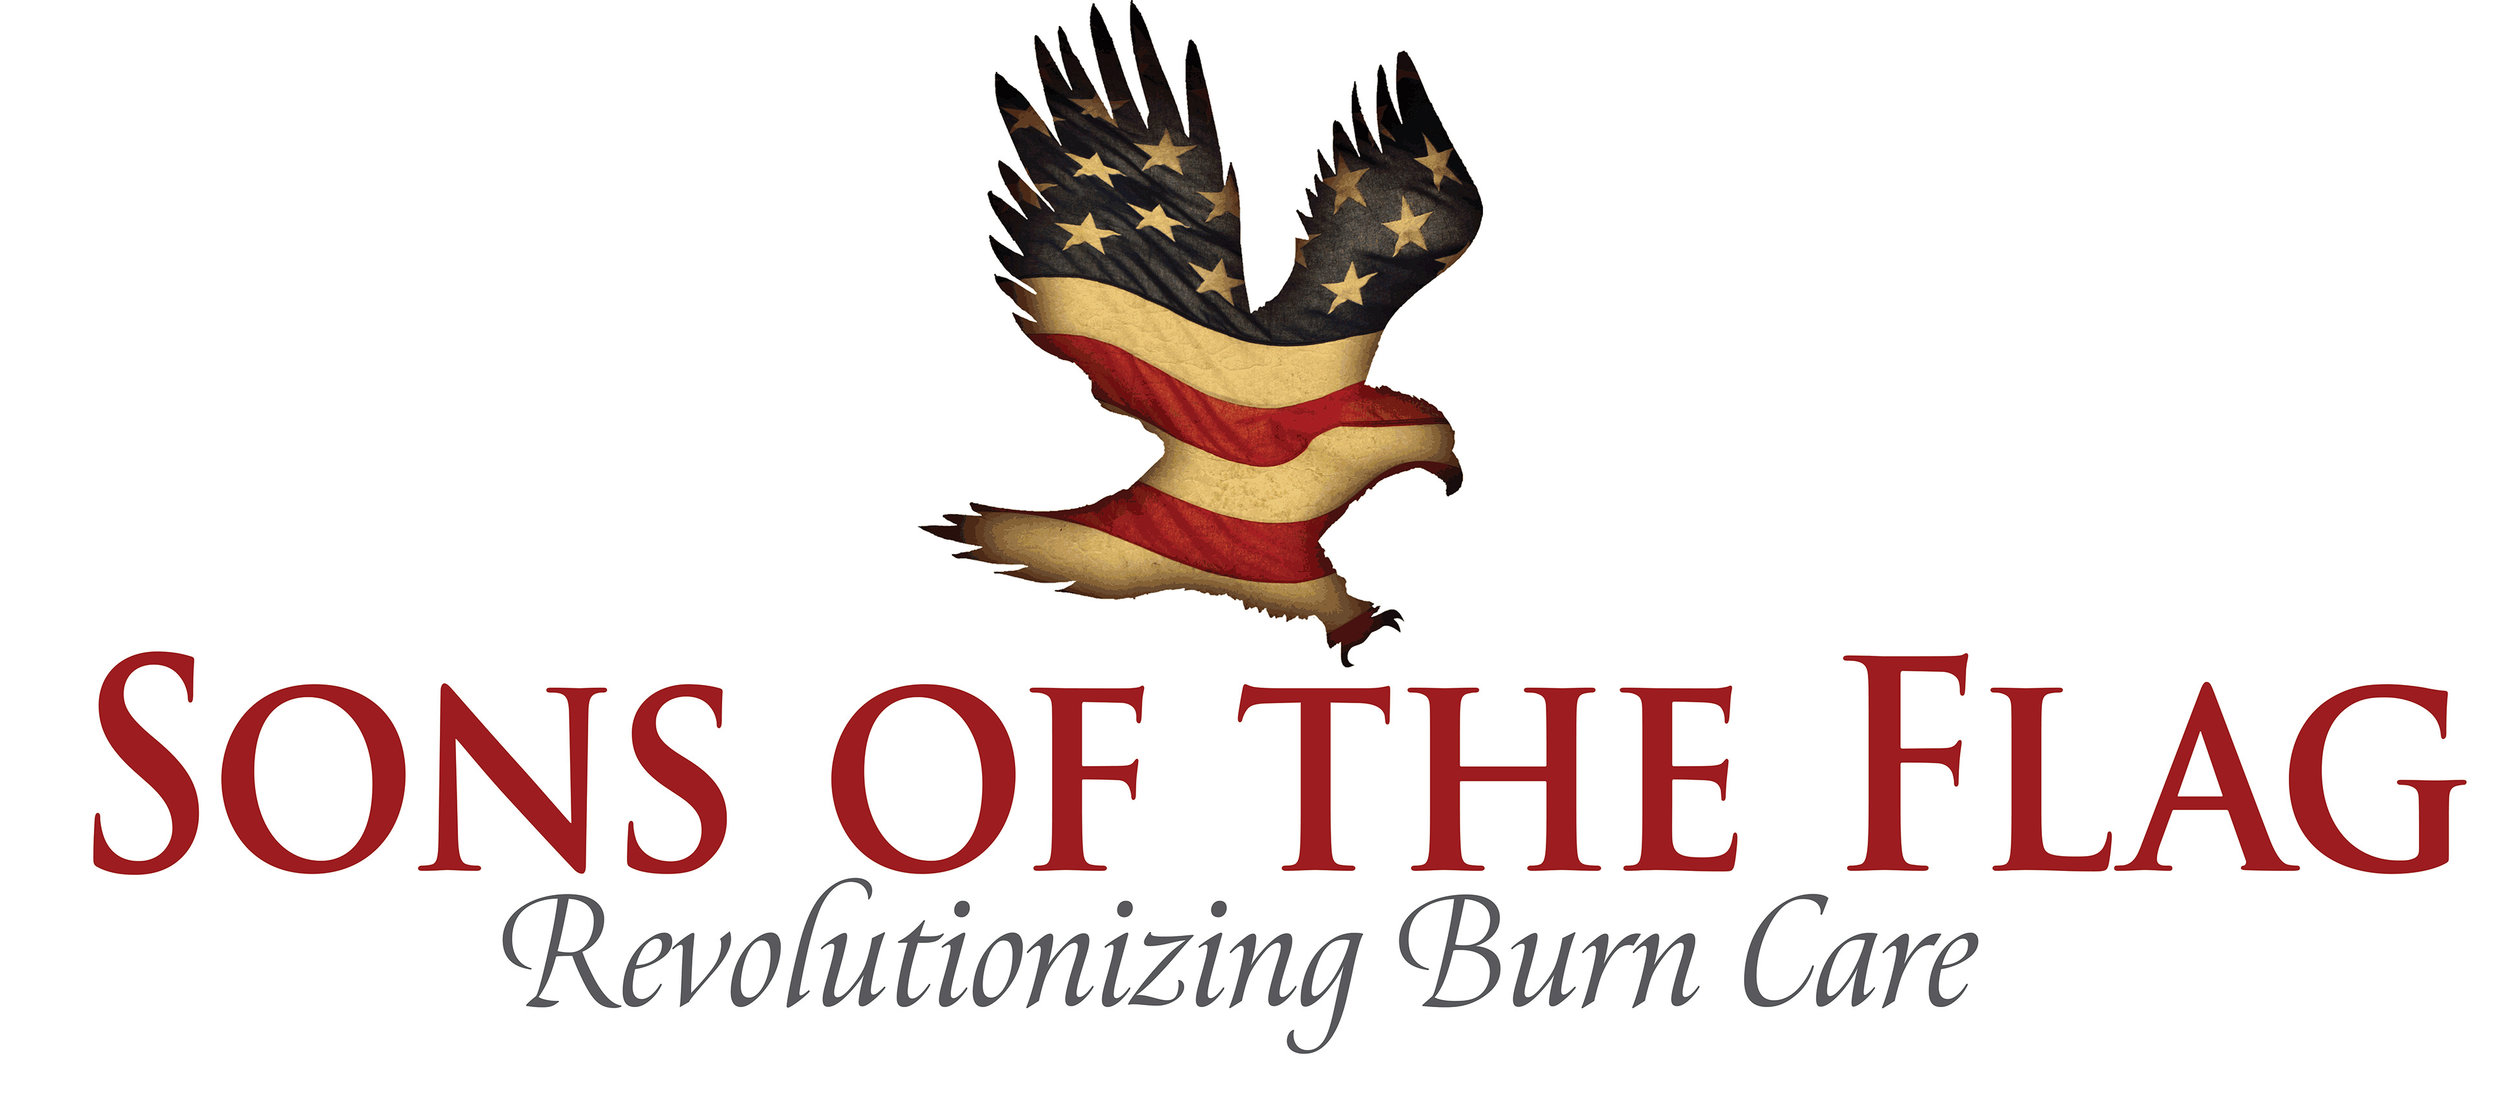 Sons of the Flag logo (website).jpg